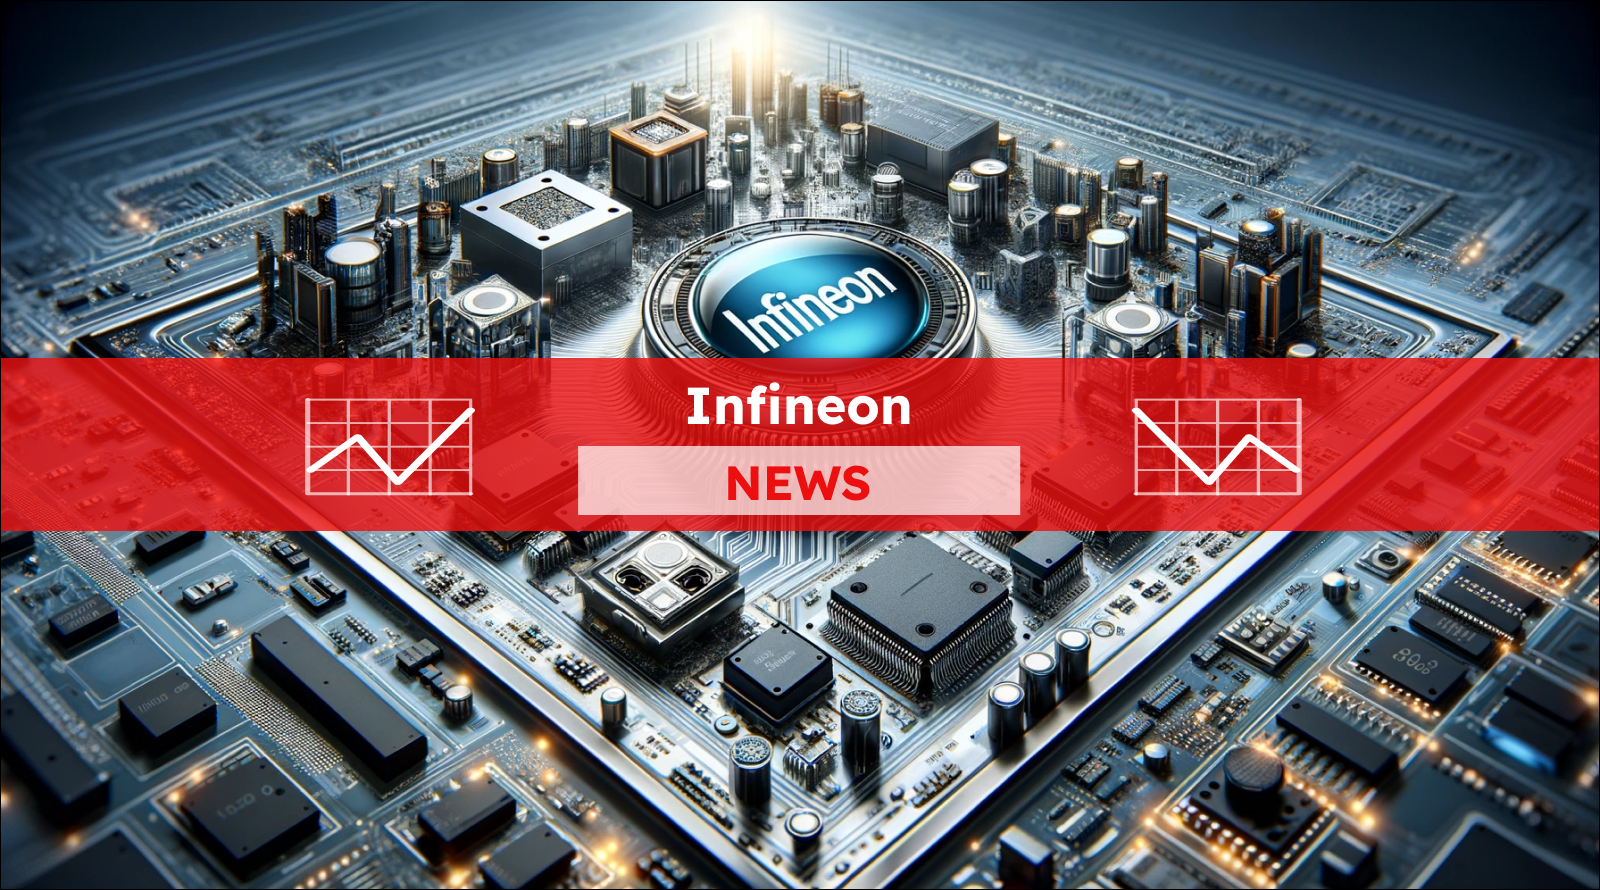 Ein Computer-Motherboard mit einem zentralen Chip, der das Infineon-Logo trägt, mit einem Infineon NEWS Banner.